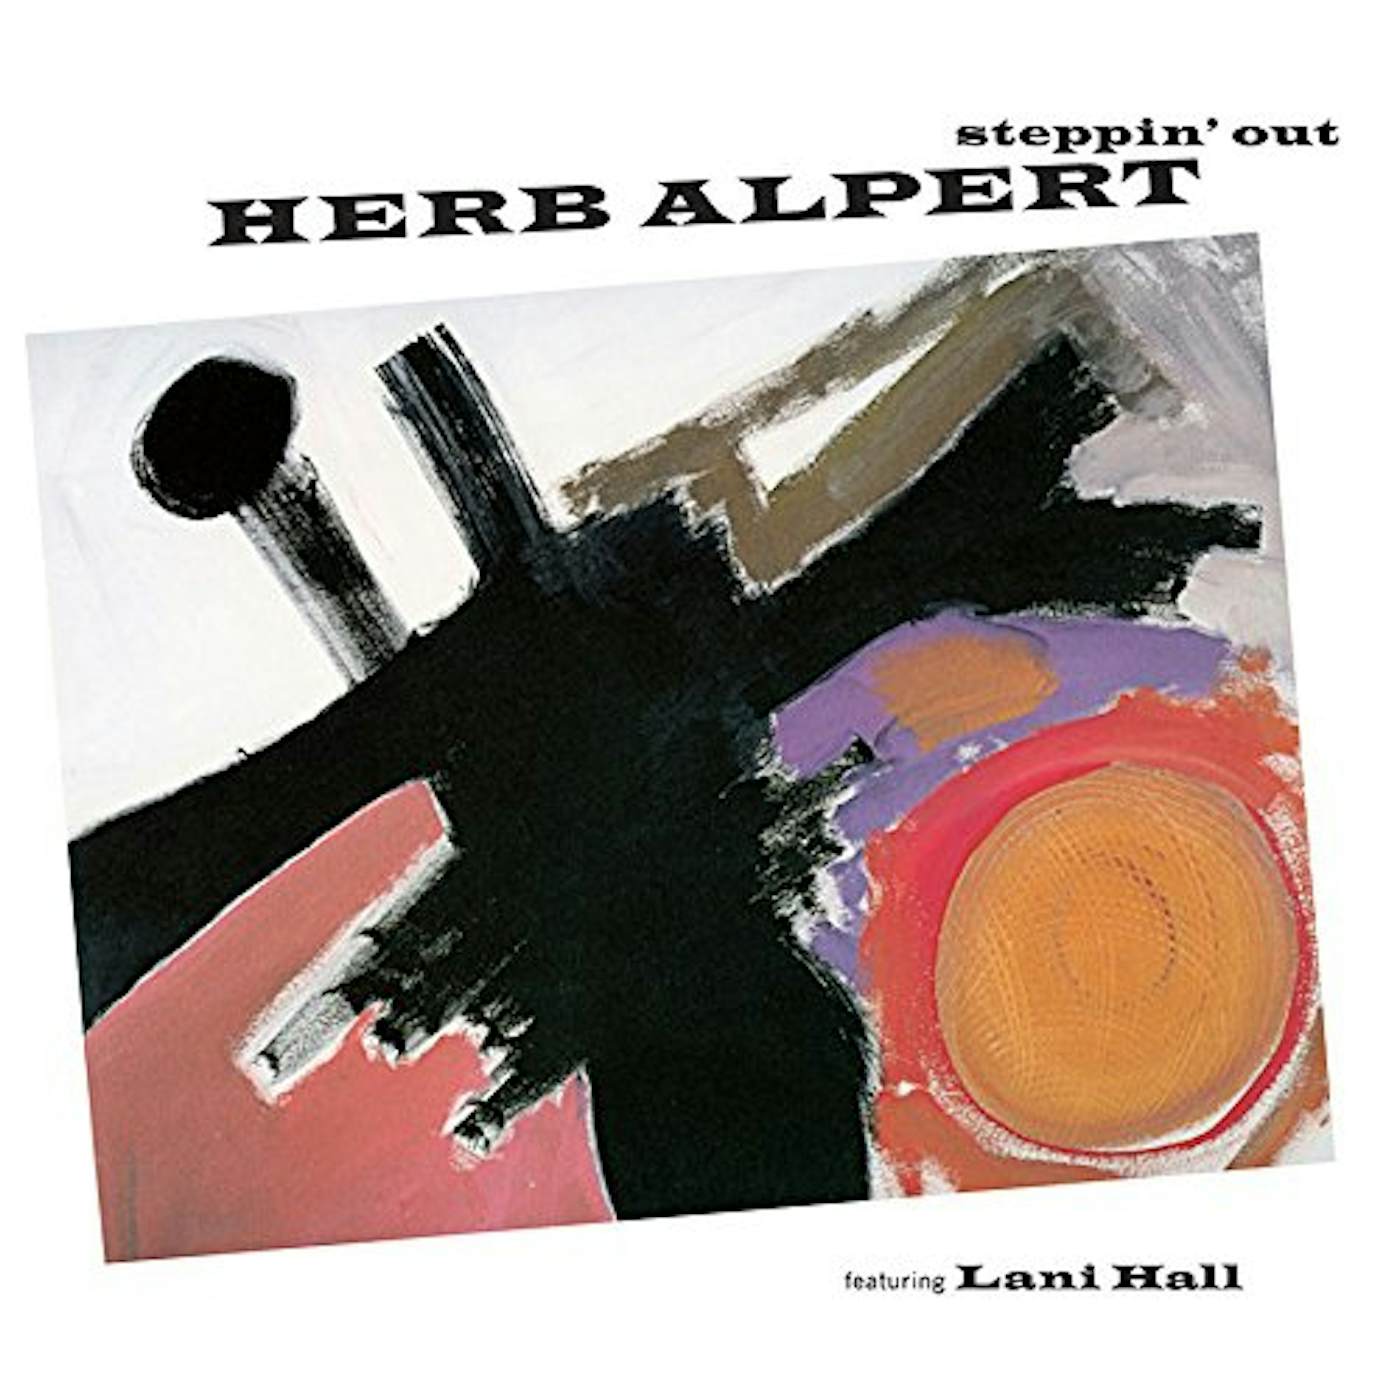 Herb Alpert STEPPIN OUT CD